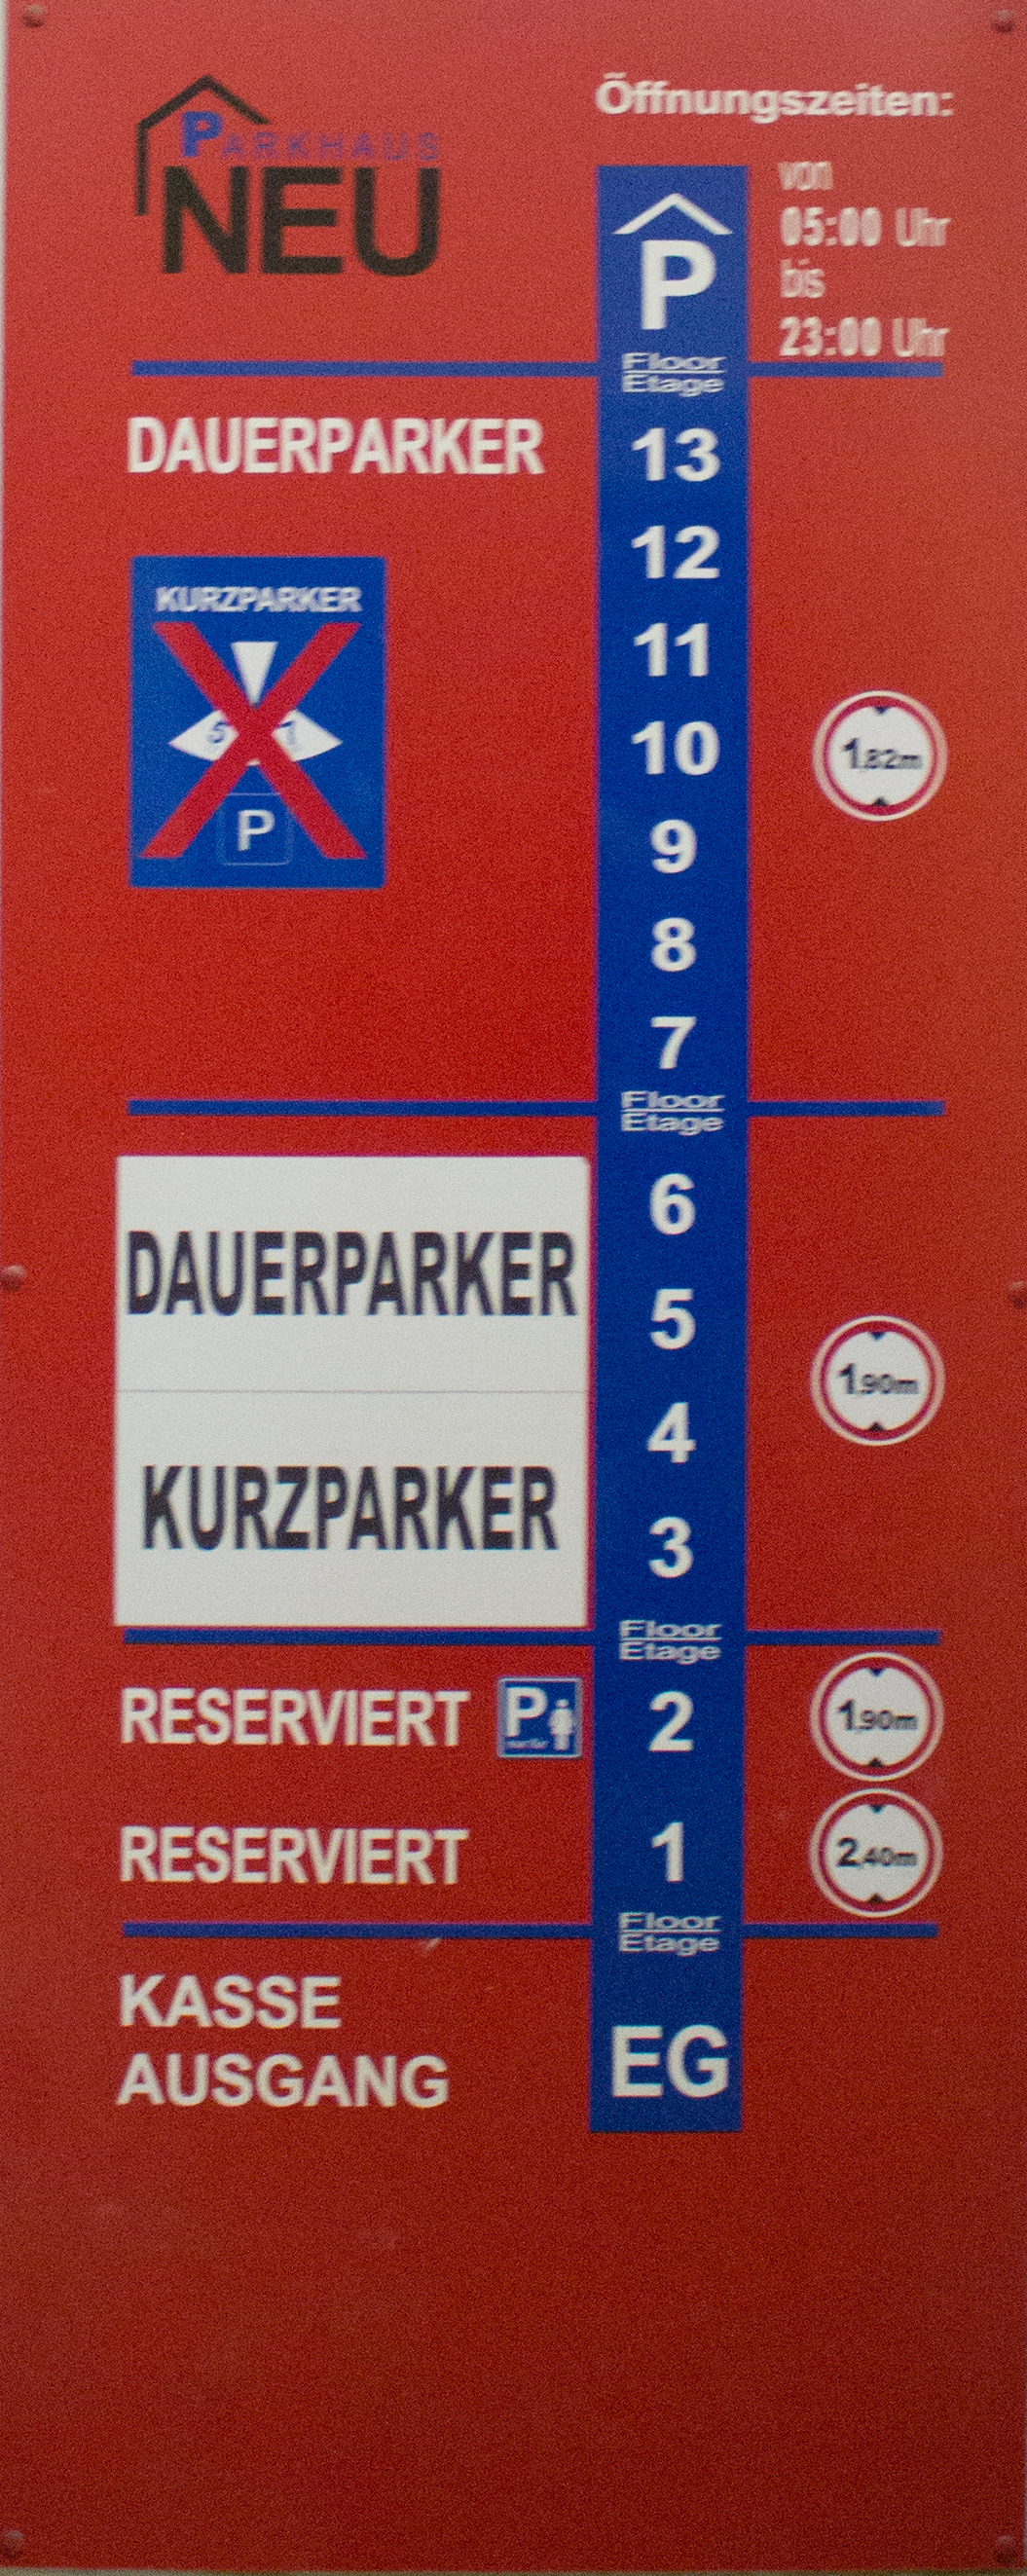 Parkhaus Neu Preise